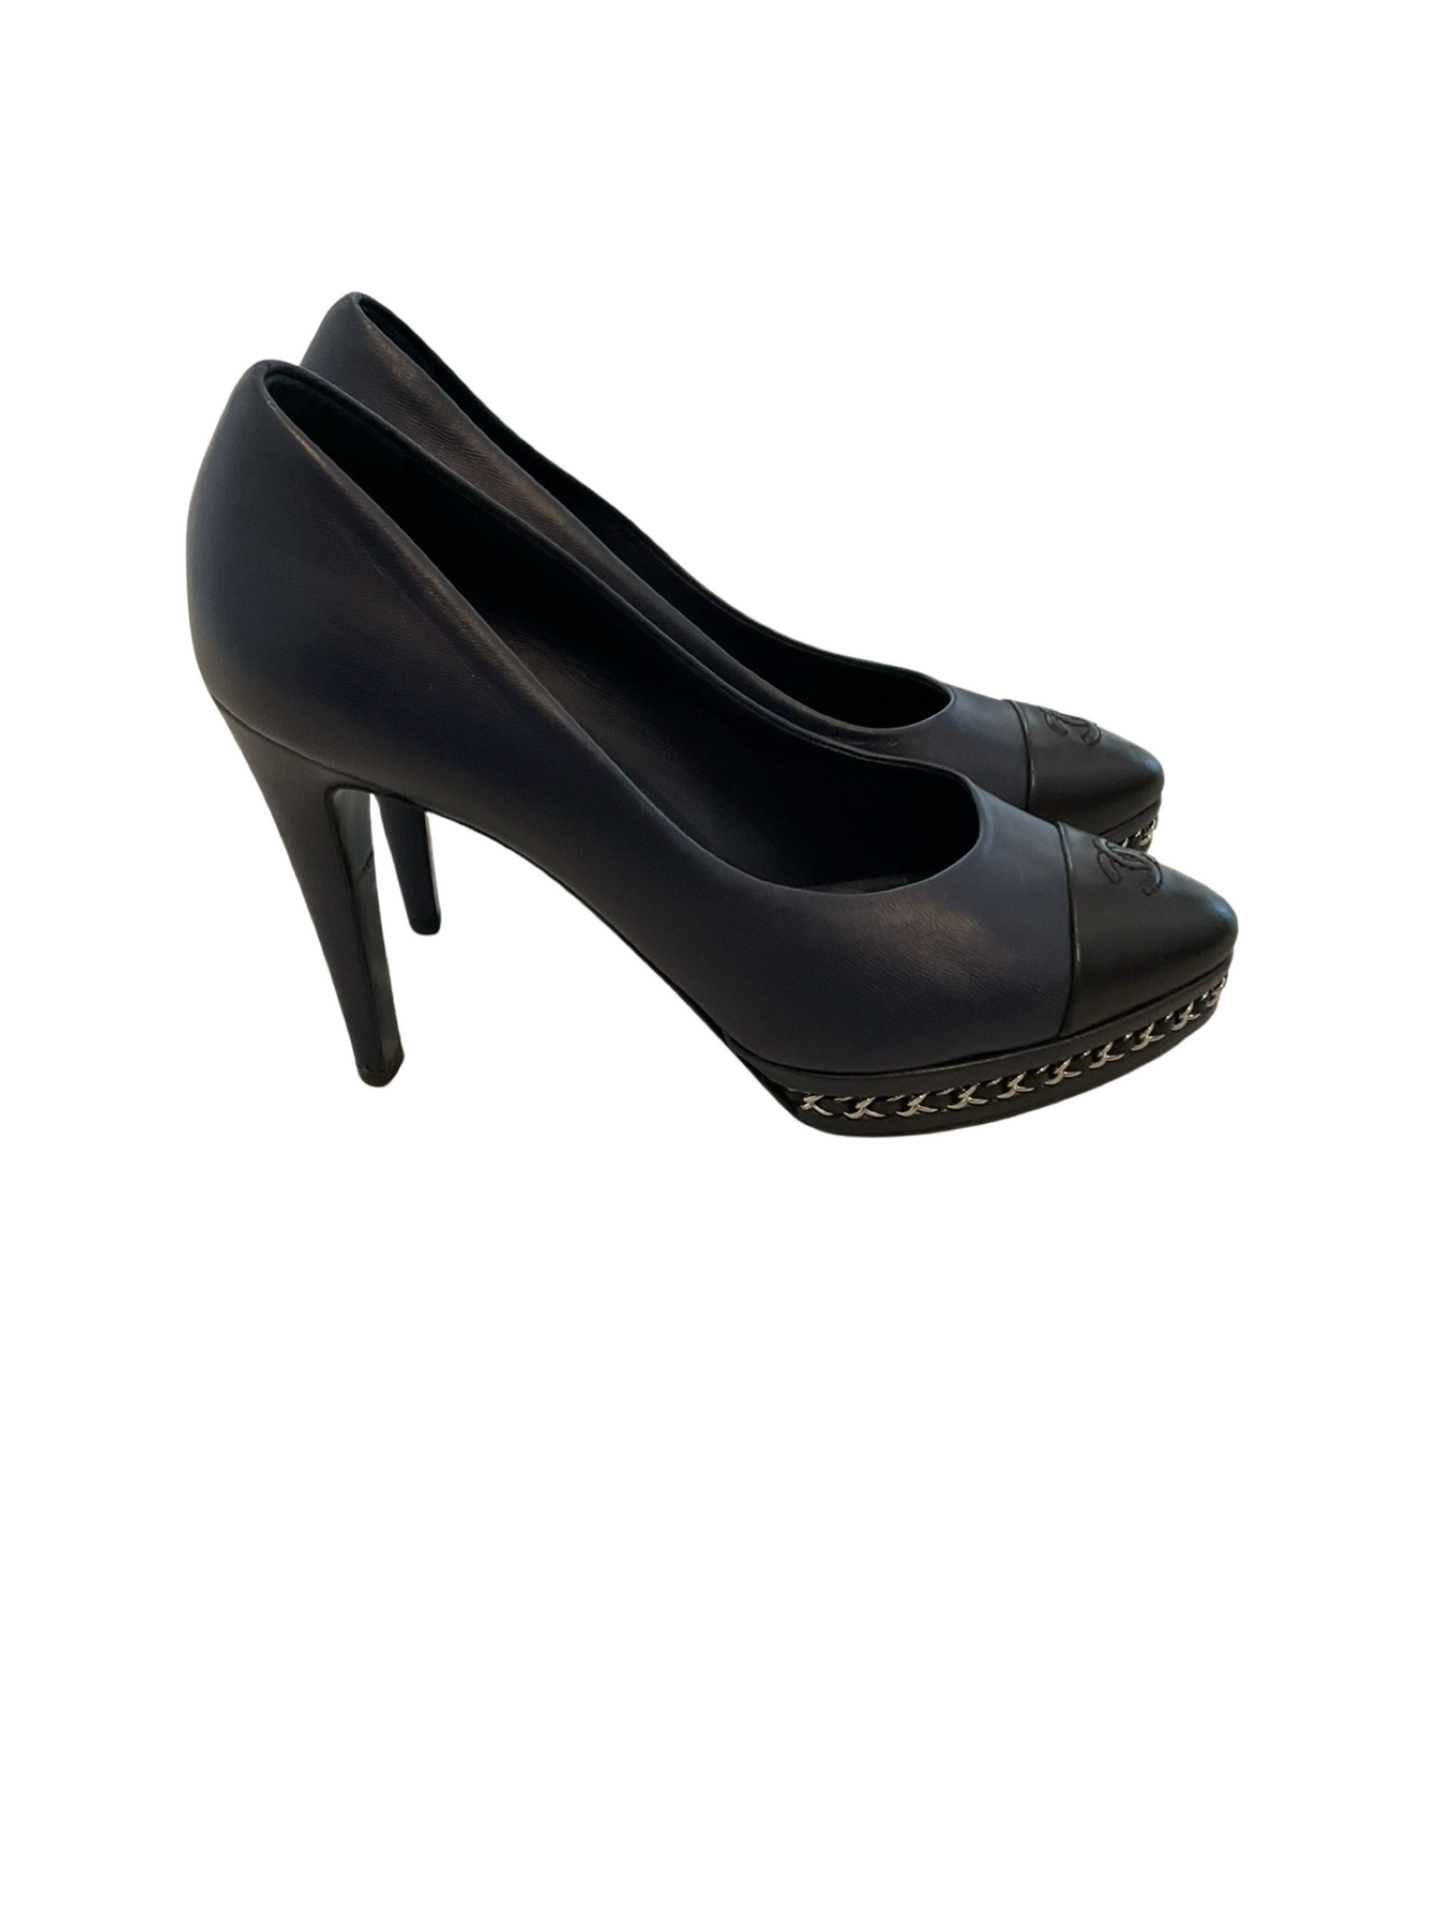 CHANEL navy/black heels